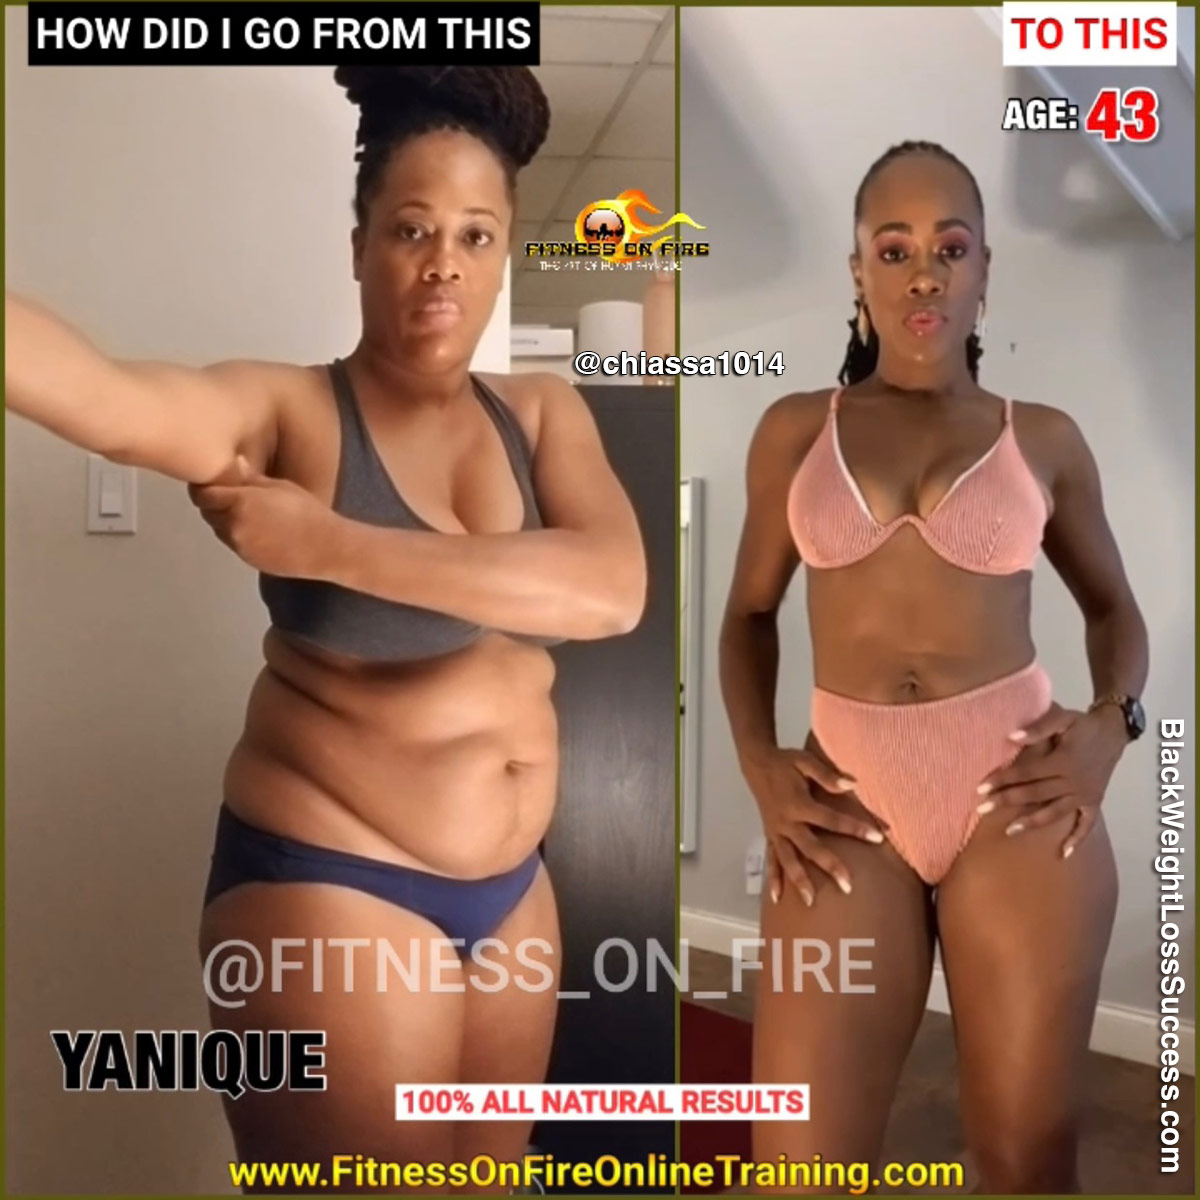 Yanique lost 53 pounds